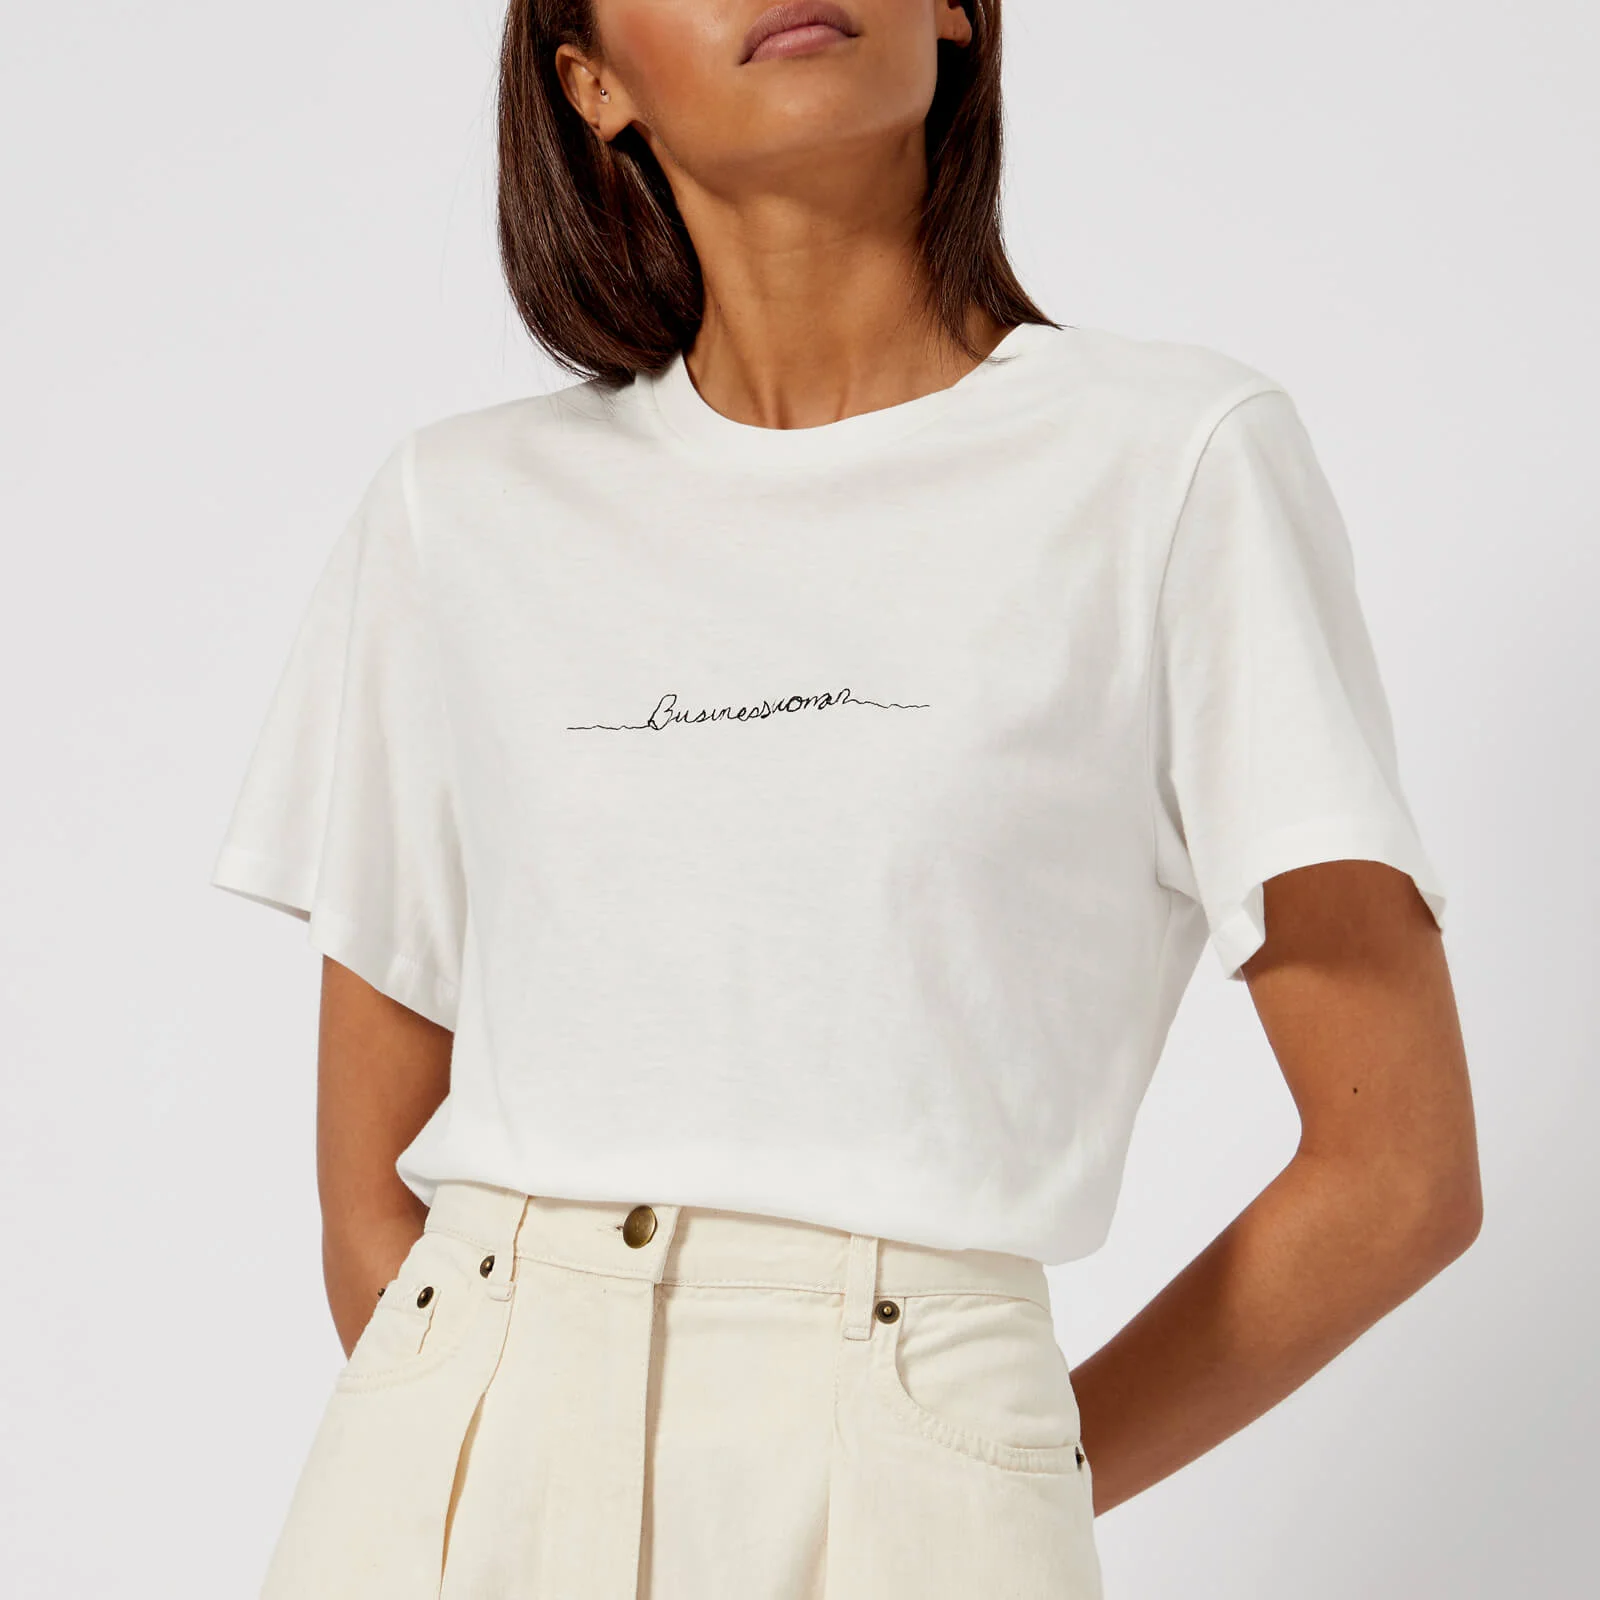 Rejina Pyo Women's Erin Business Woman T-Shirt - White Image 1